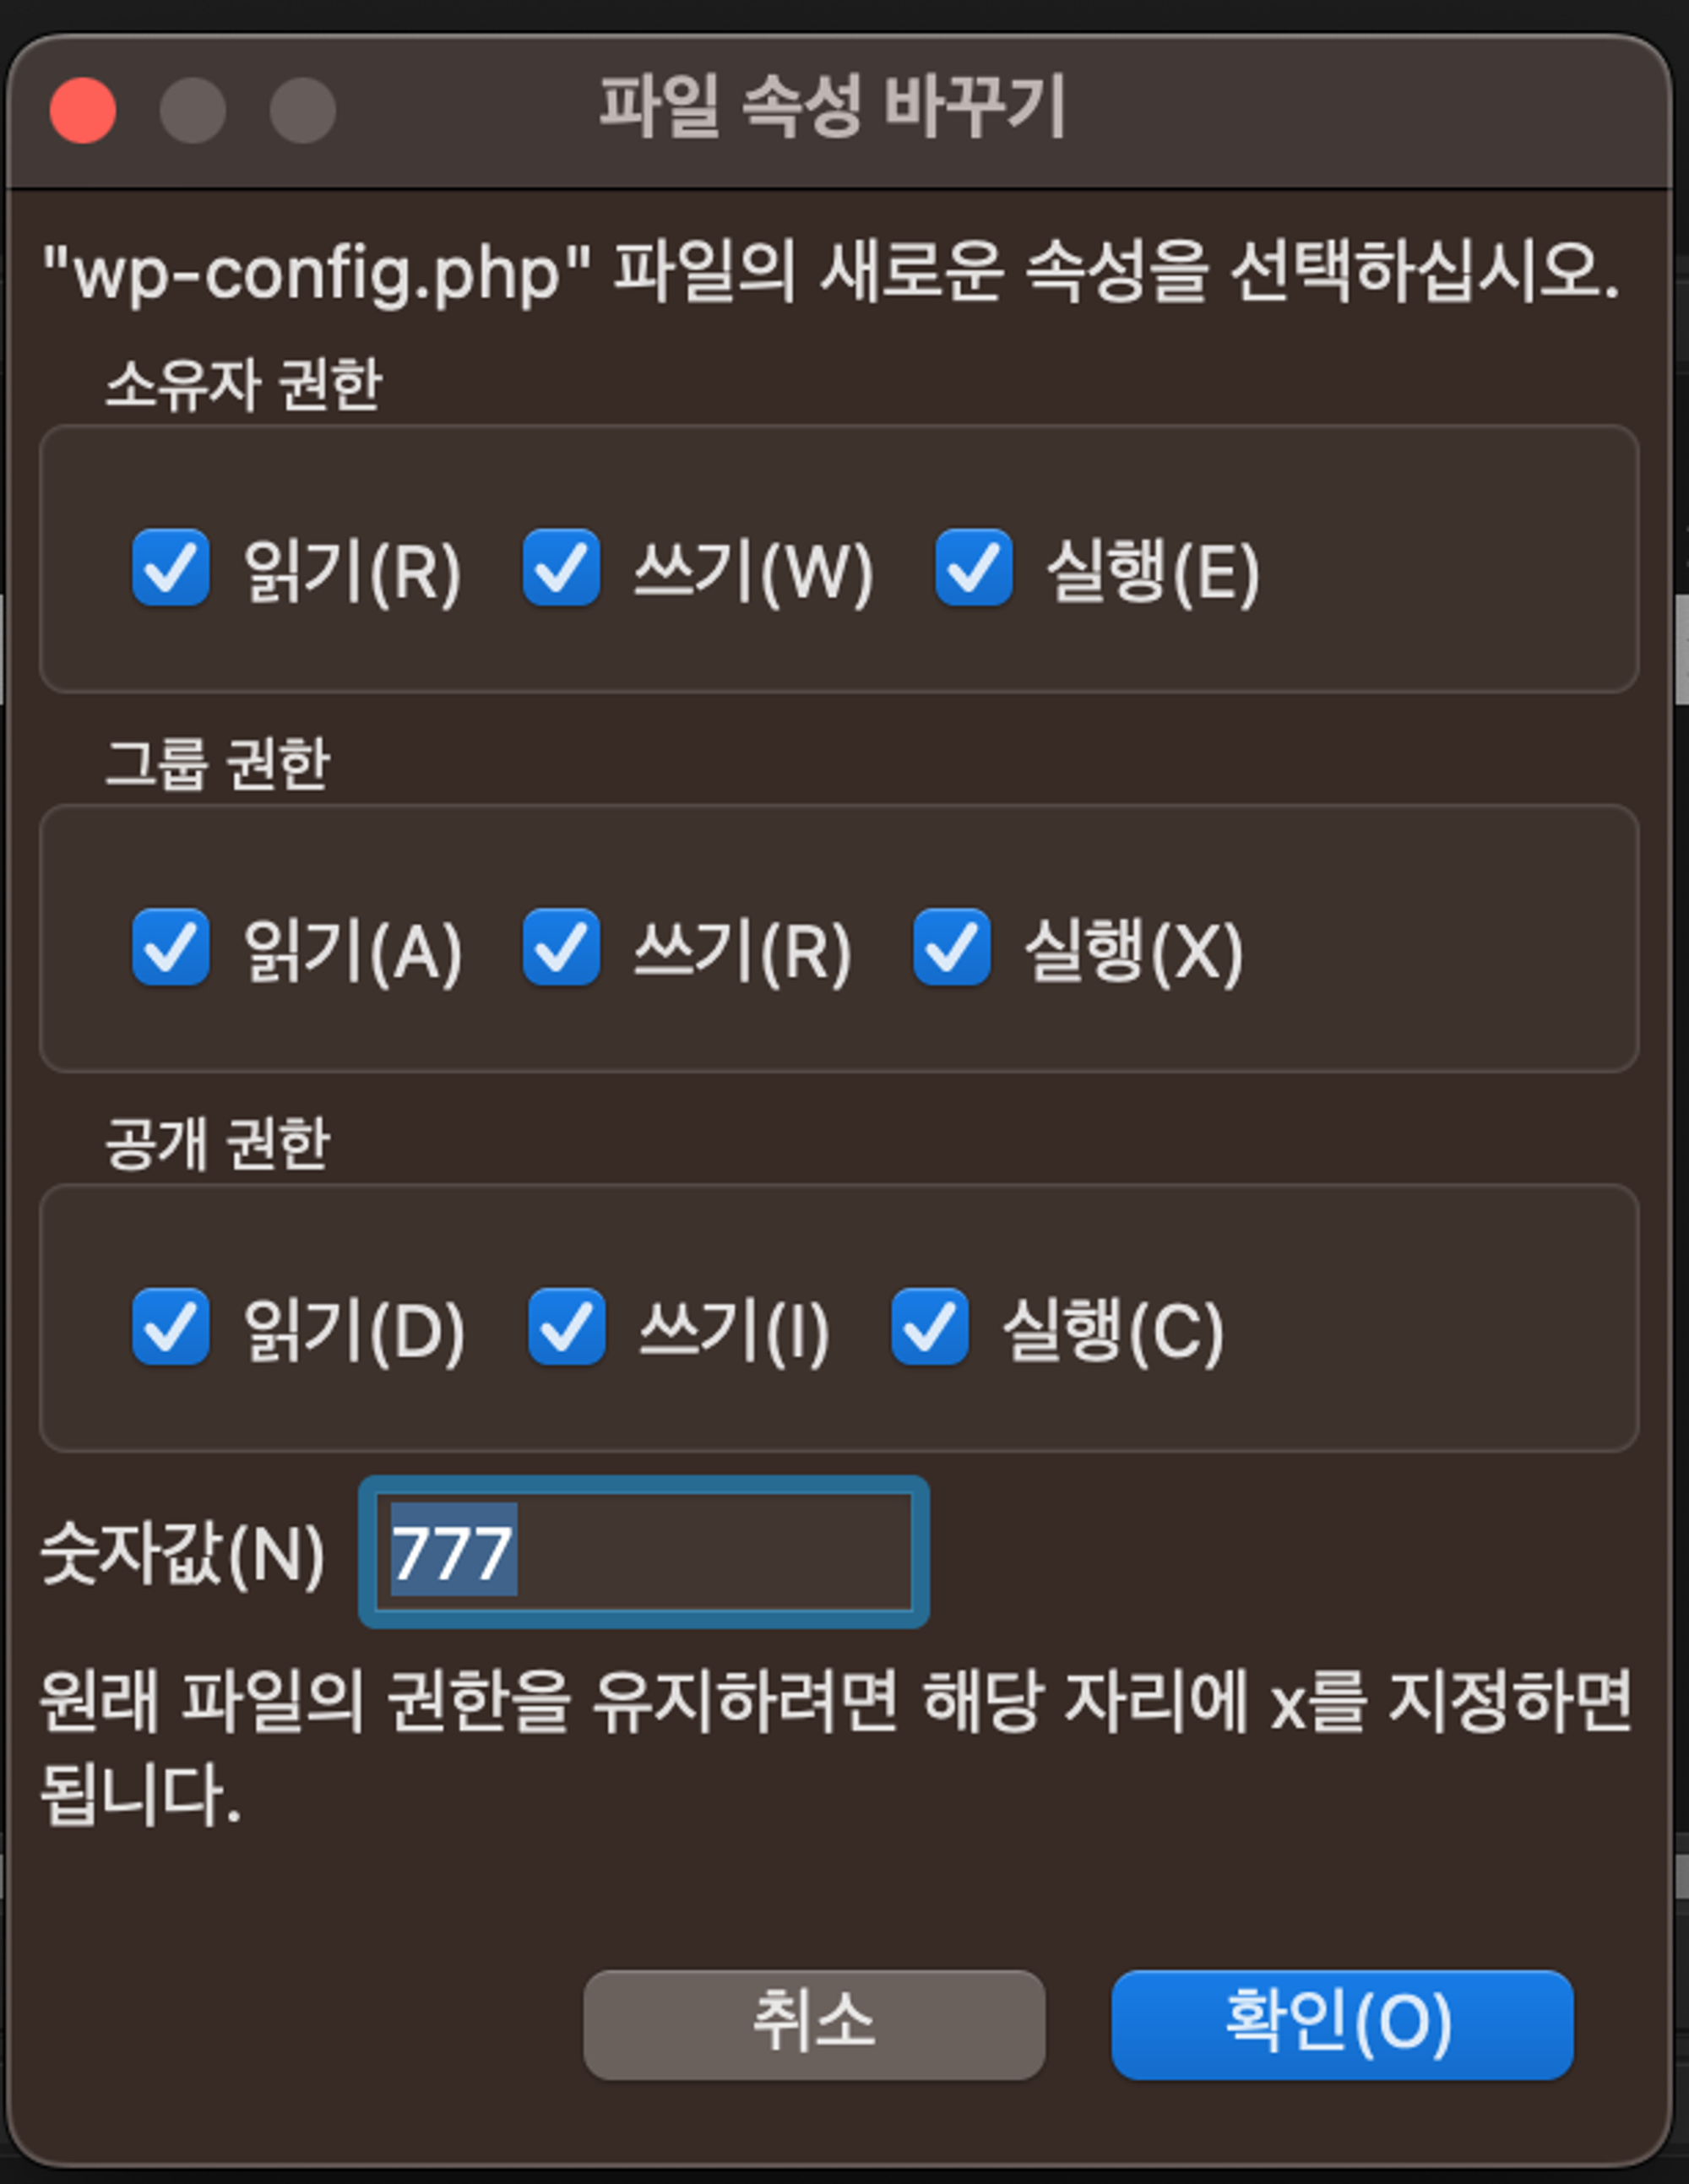 wp-config.php 파일의 권한을 777로 설정한 모습